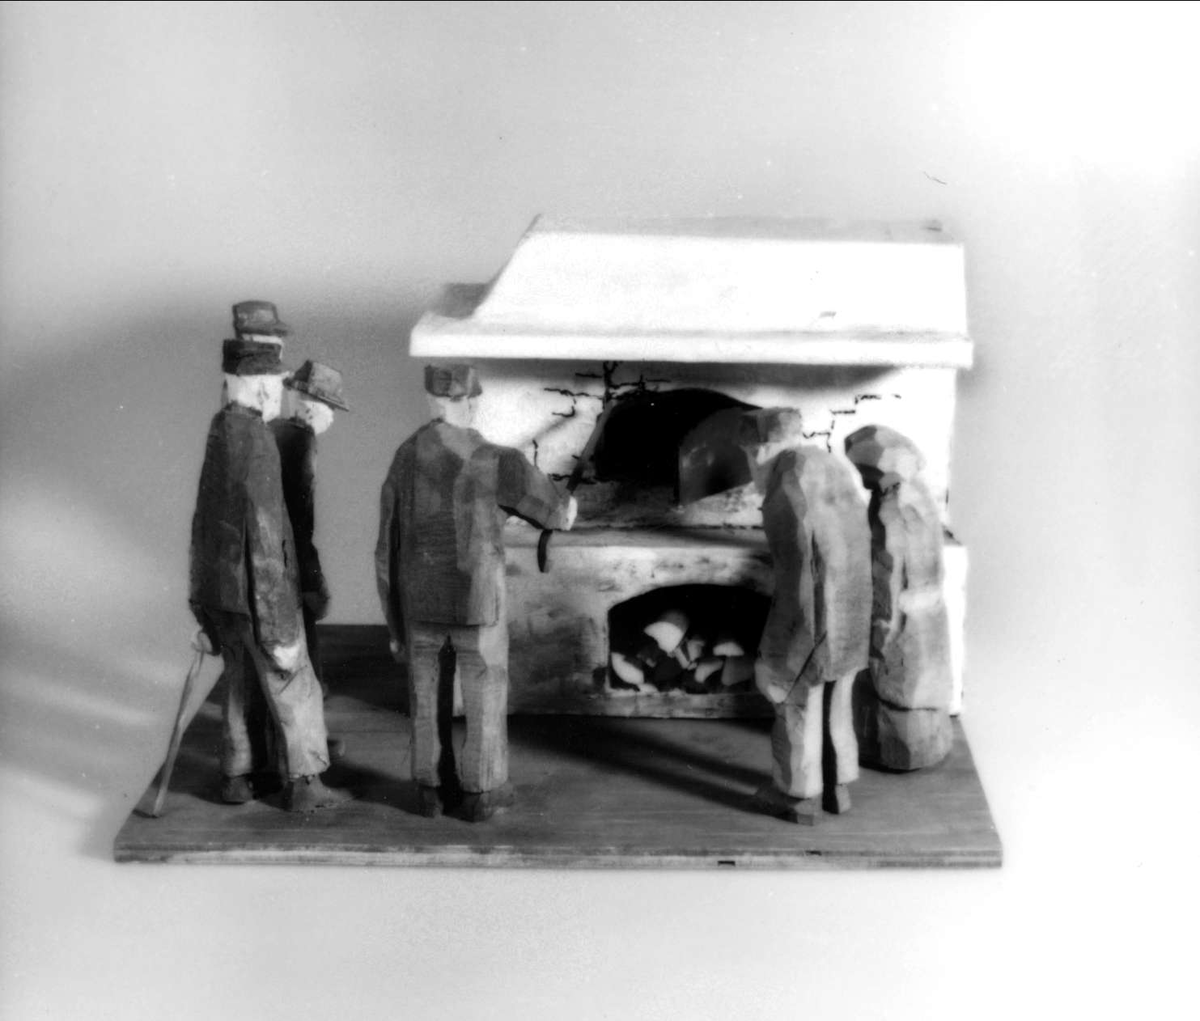 Skulptur av trä. "Brandsynen", tillverkad av Hans Lustig.

Skulpturen framställer fyra män inspekterande en stor spismur med bakugn vid sidan om dem en man och en kvinna betraktande "brandsynen". Hela gruppen står på en platta.